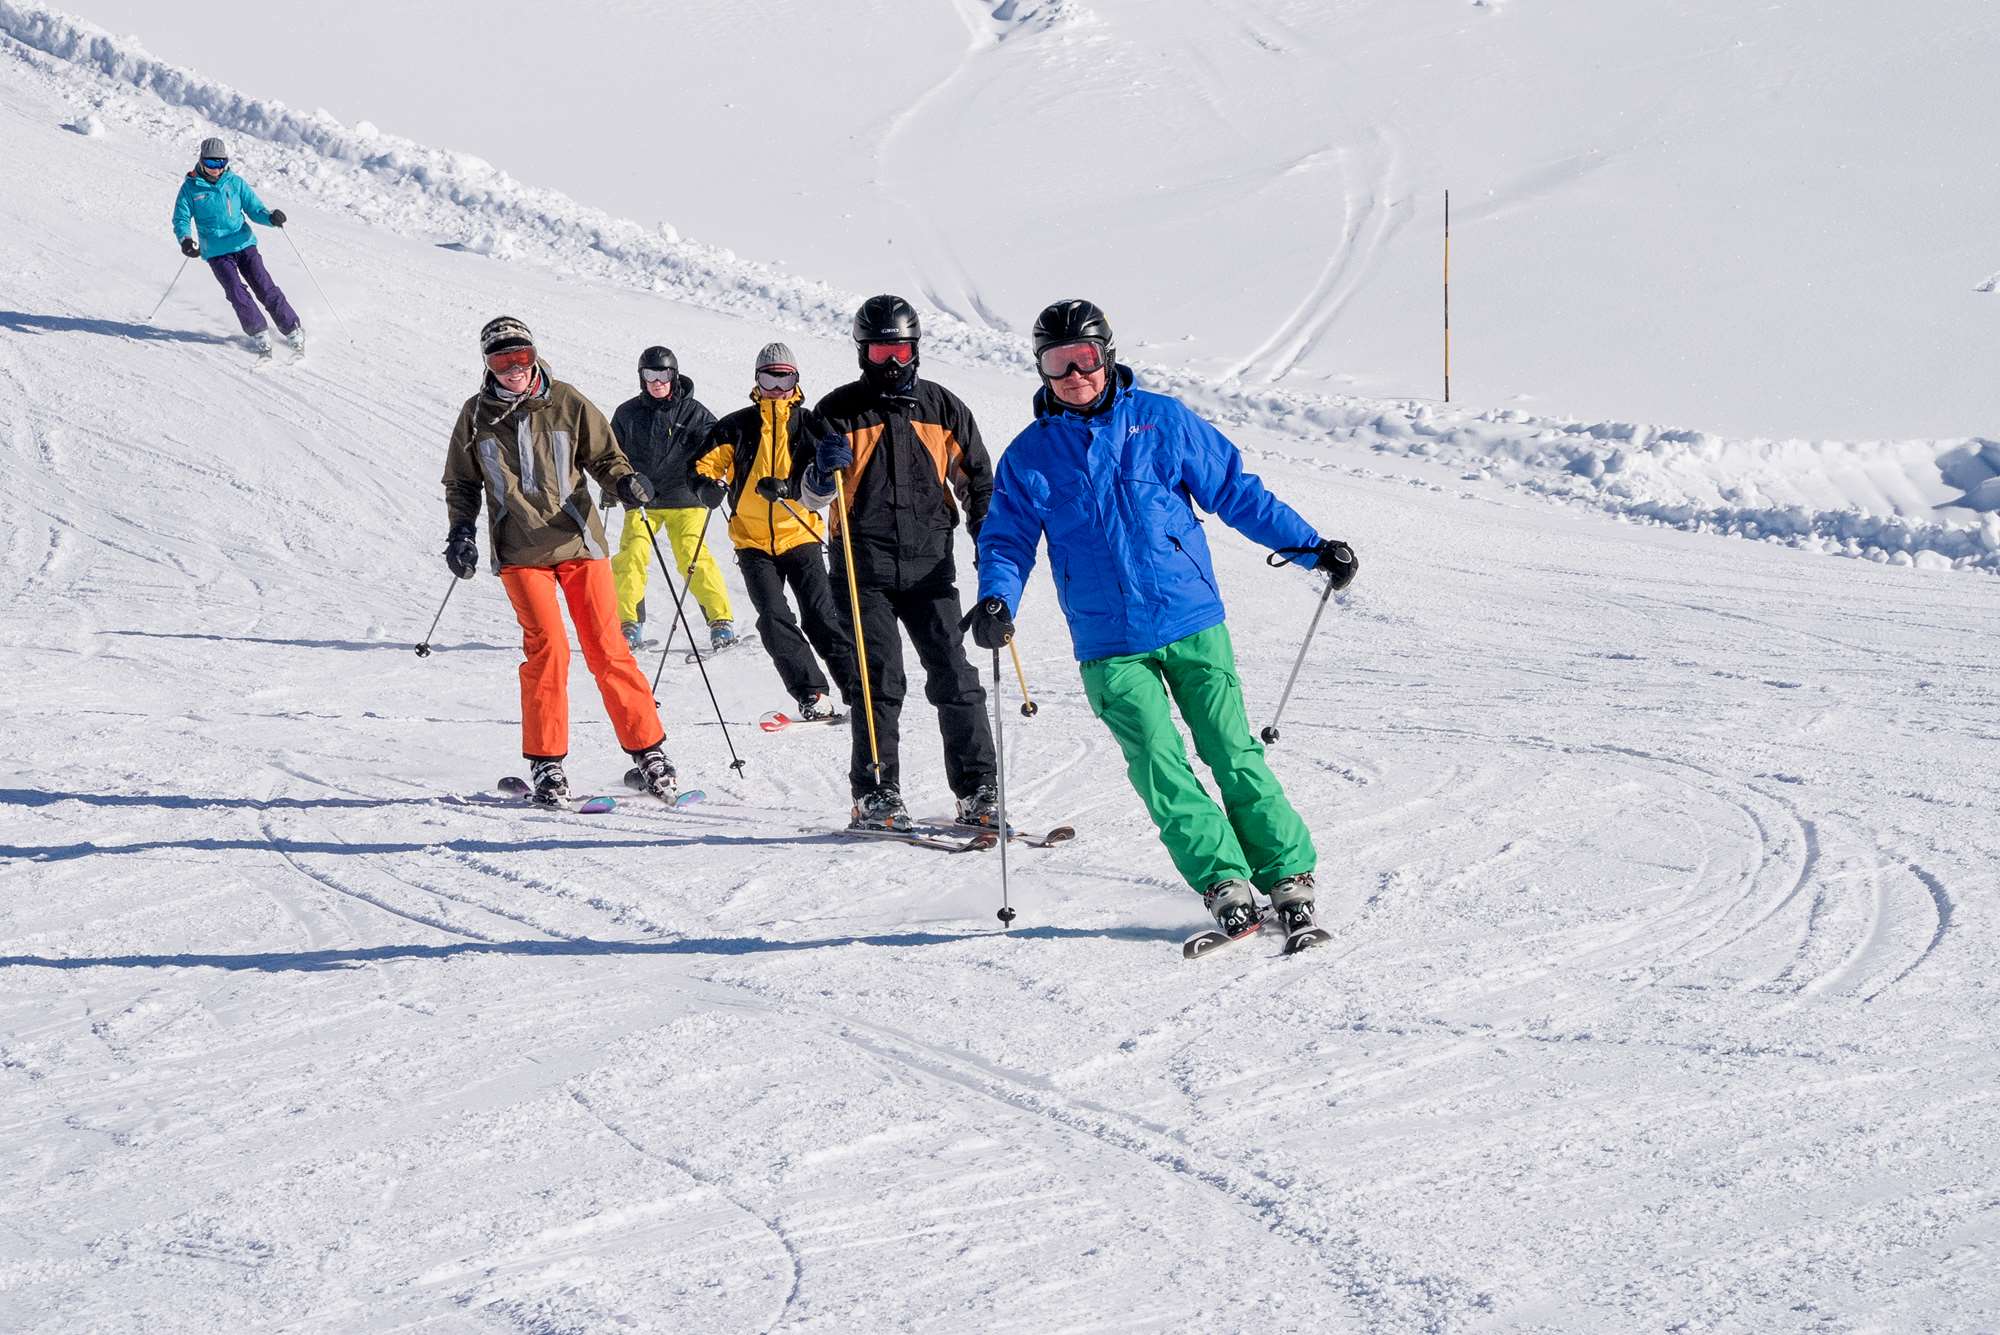 Ski hosting in Bad Gastein